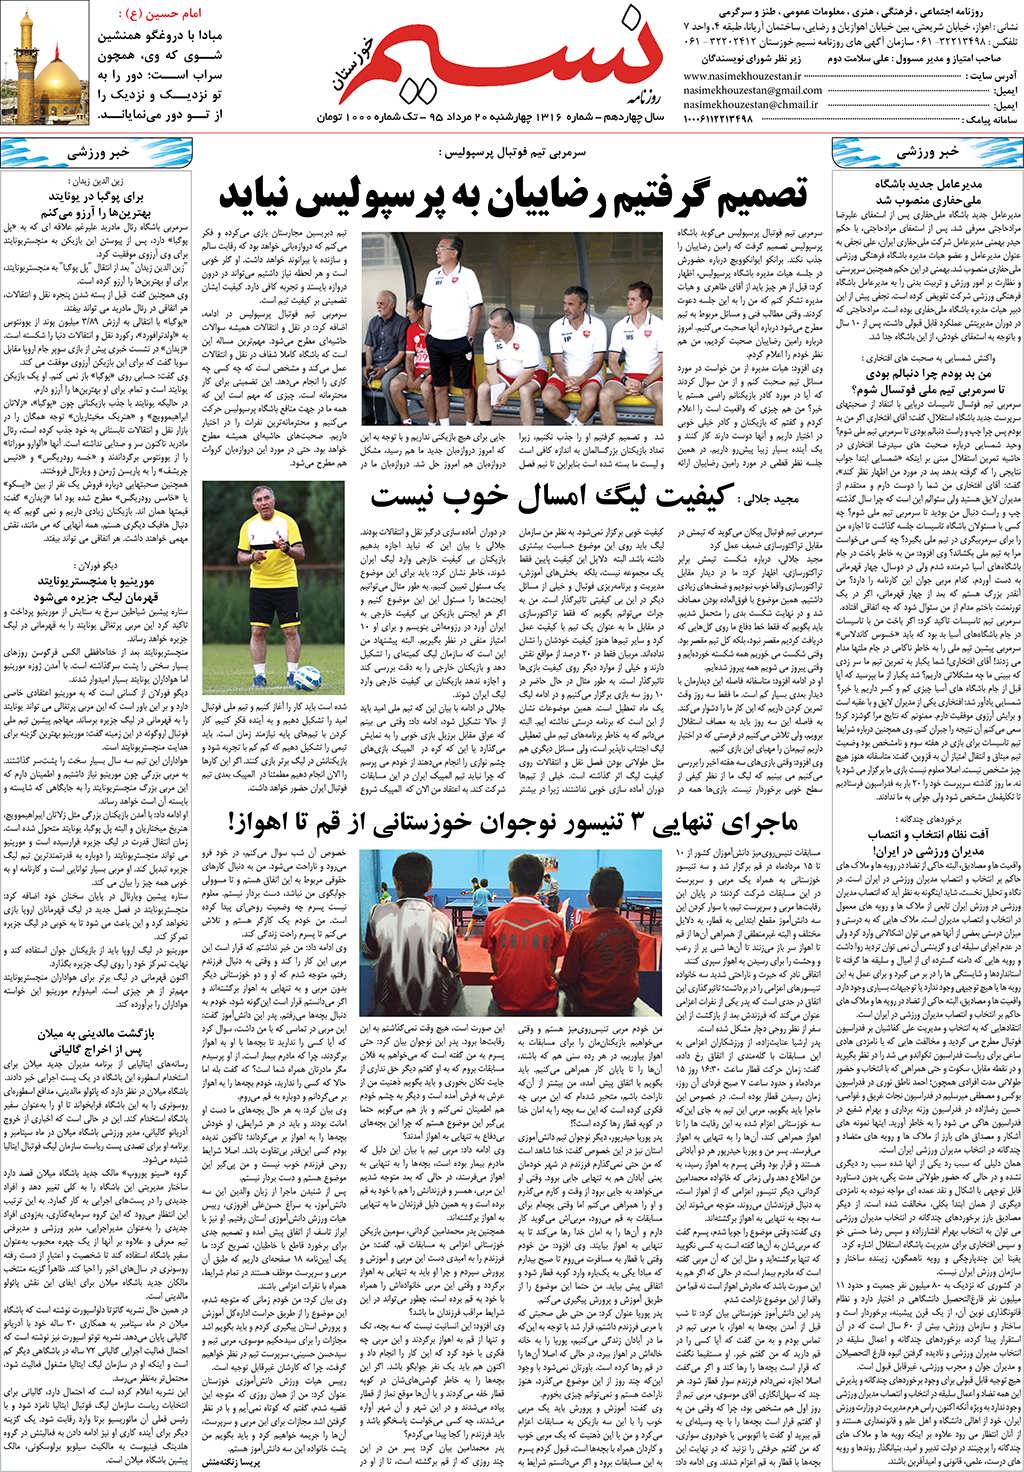 صفحه آخر روزنامه نسیم شماره 1316